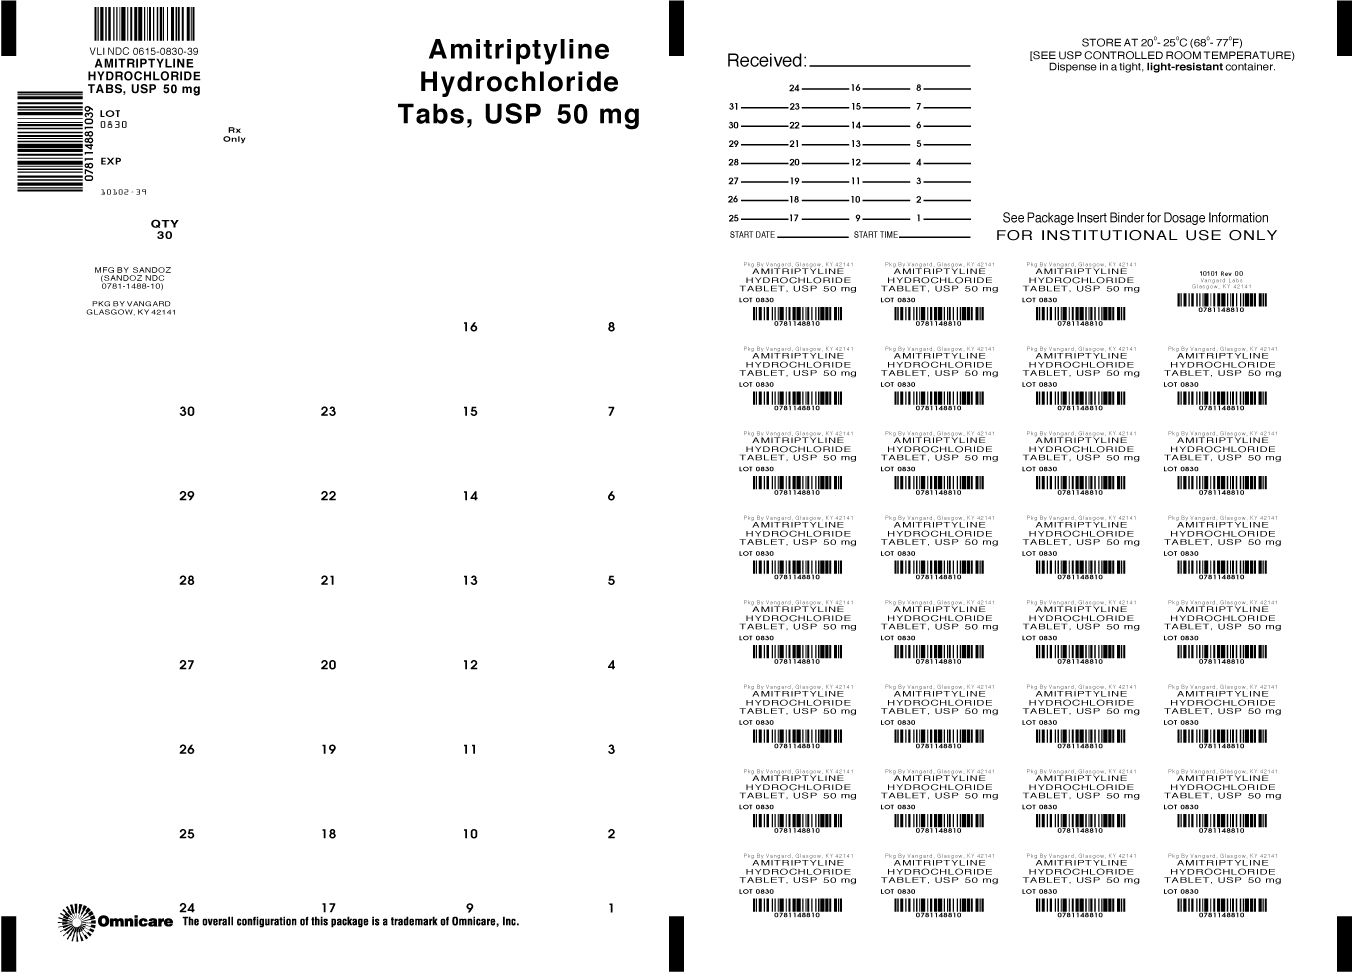 Principal Display Panel-Amitriptyline HCl Tabs, USP 50mg